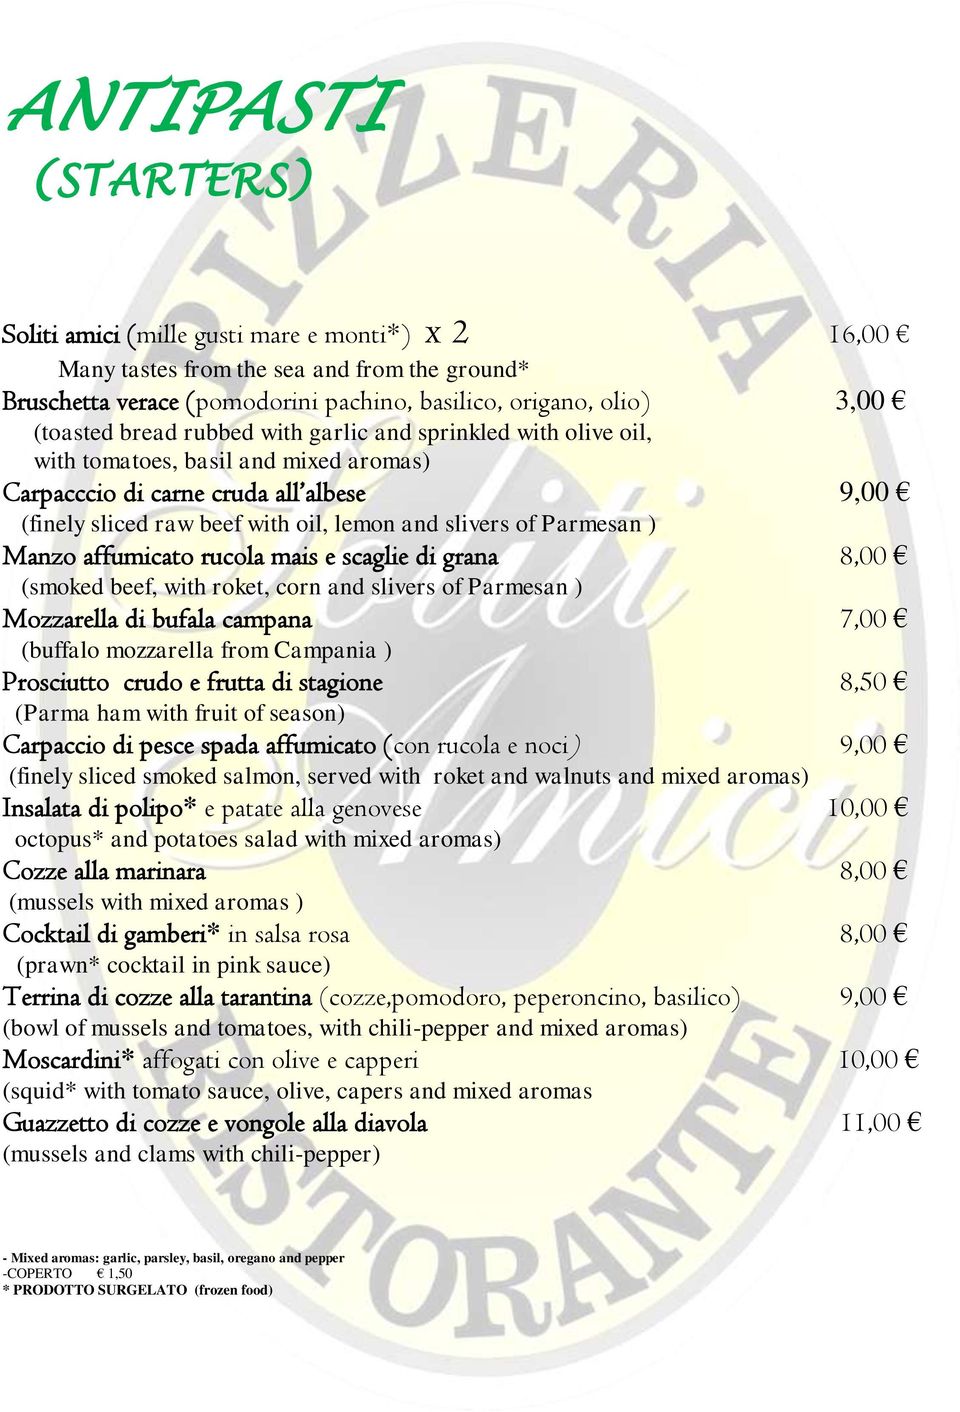 ) Manzo affumicato rucola mais e scaglie di grana 8,00 (smoked beef, with roket, corn and slivers of Parmesan ) Mozzarella di bufala campana 7,00 (buffalo mozzarella from Campania ) Prosciutto crudo